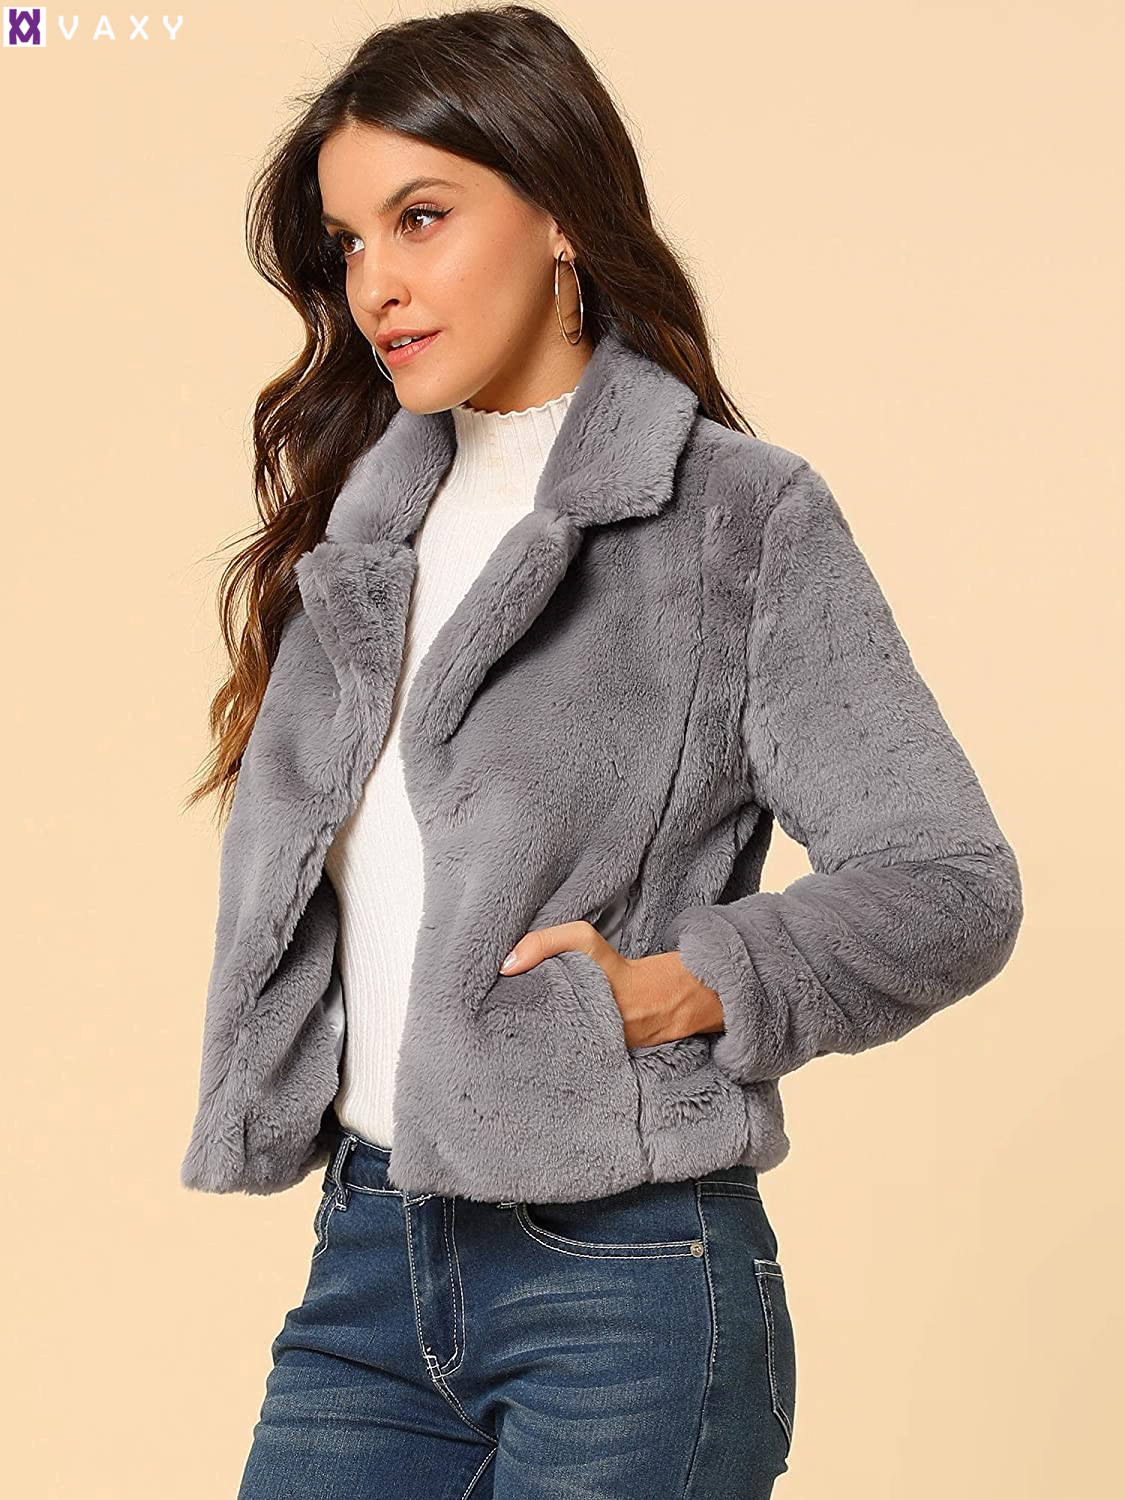 Với vẻ ngoài sang trọng mà ấm áp, vải faux fur elegant là sự lựa chọn hoàn hảo cho áo khoác nữ.